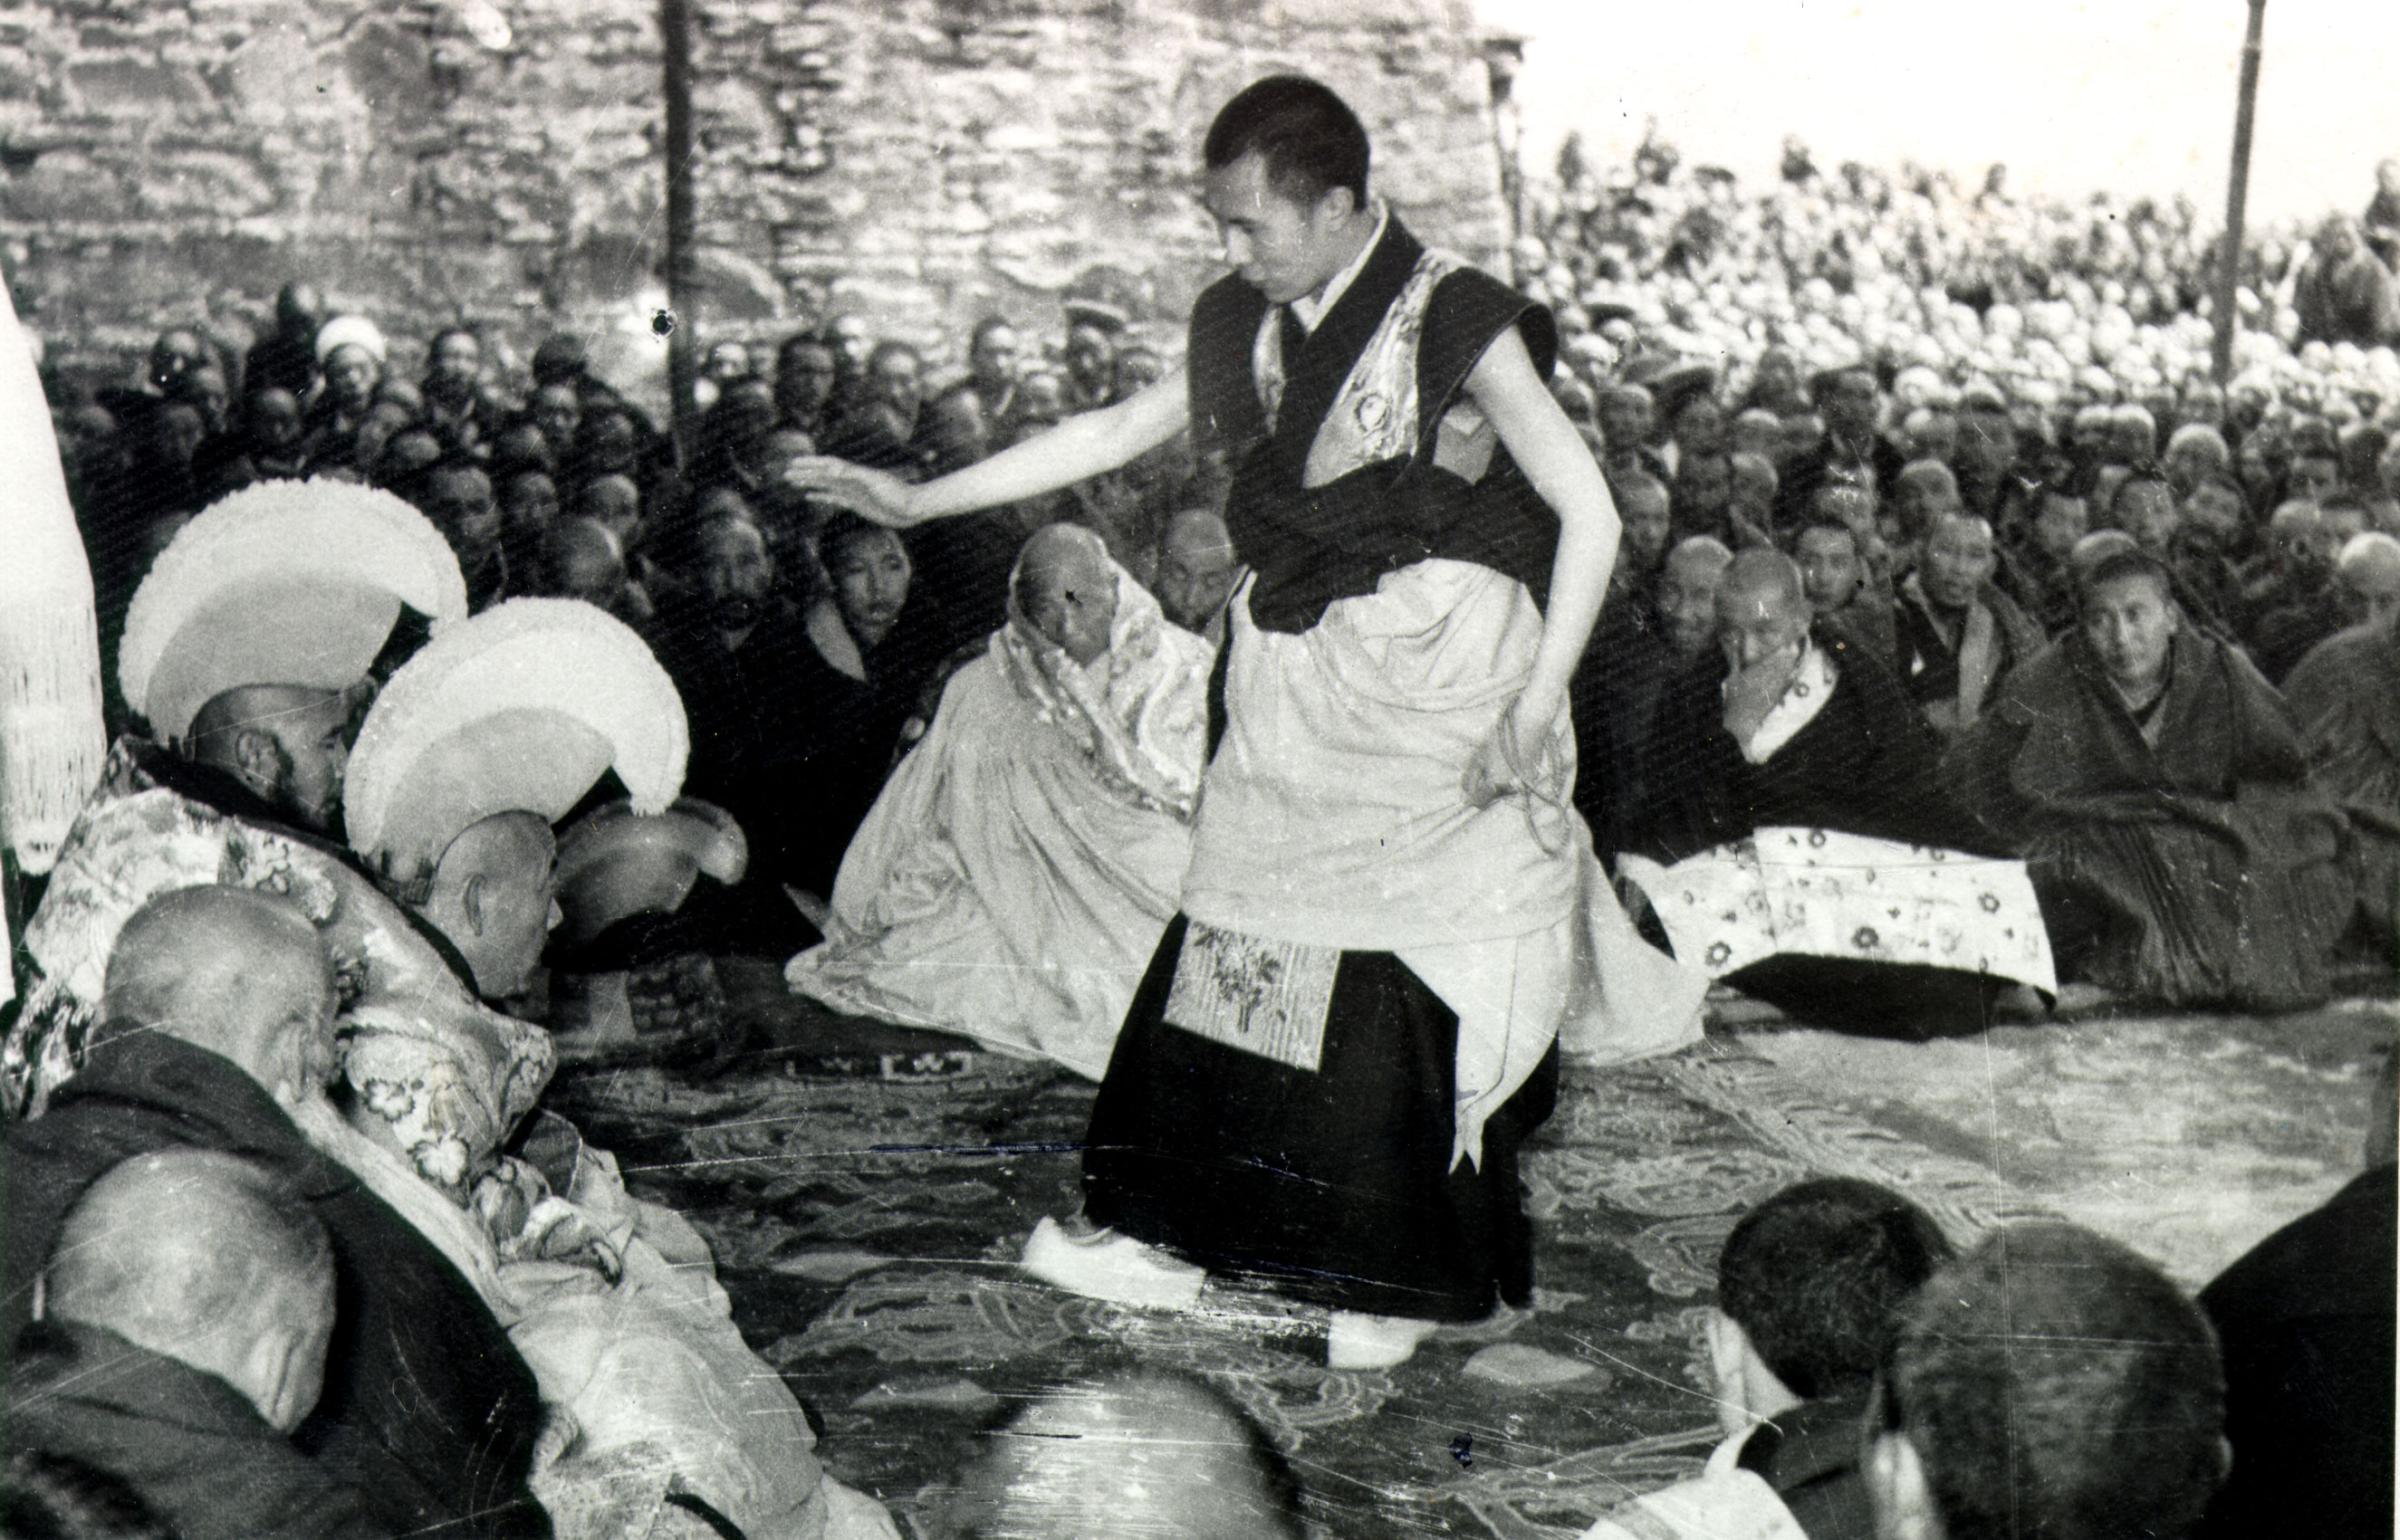 Dalai Lama early life photos